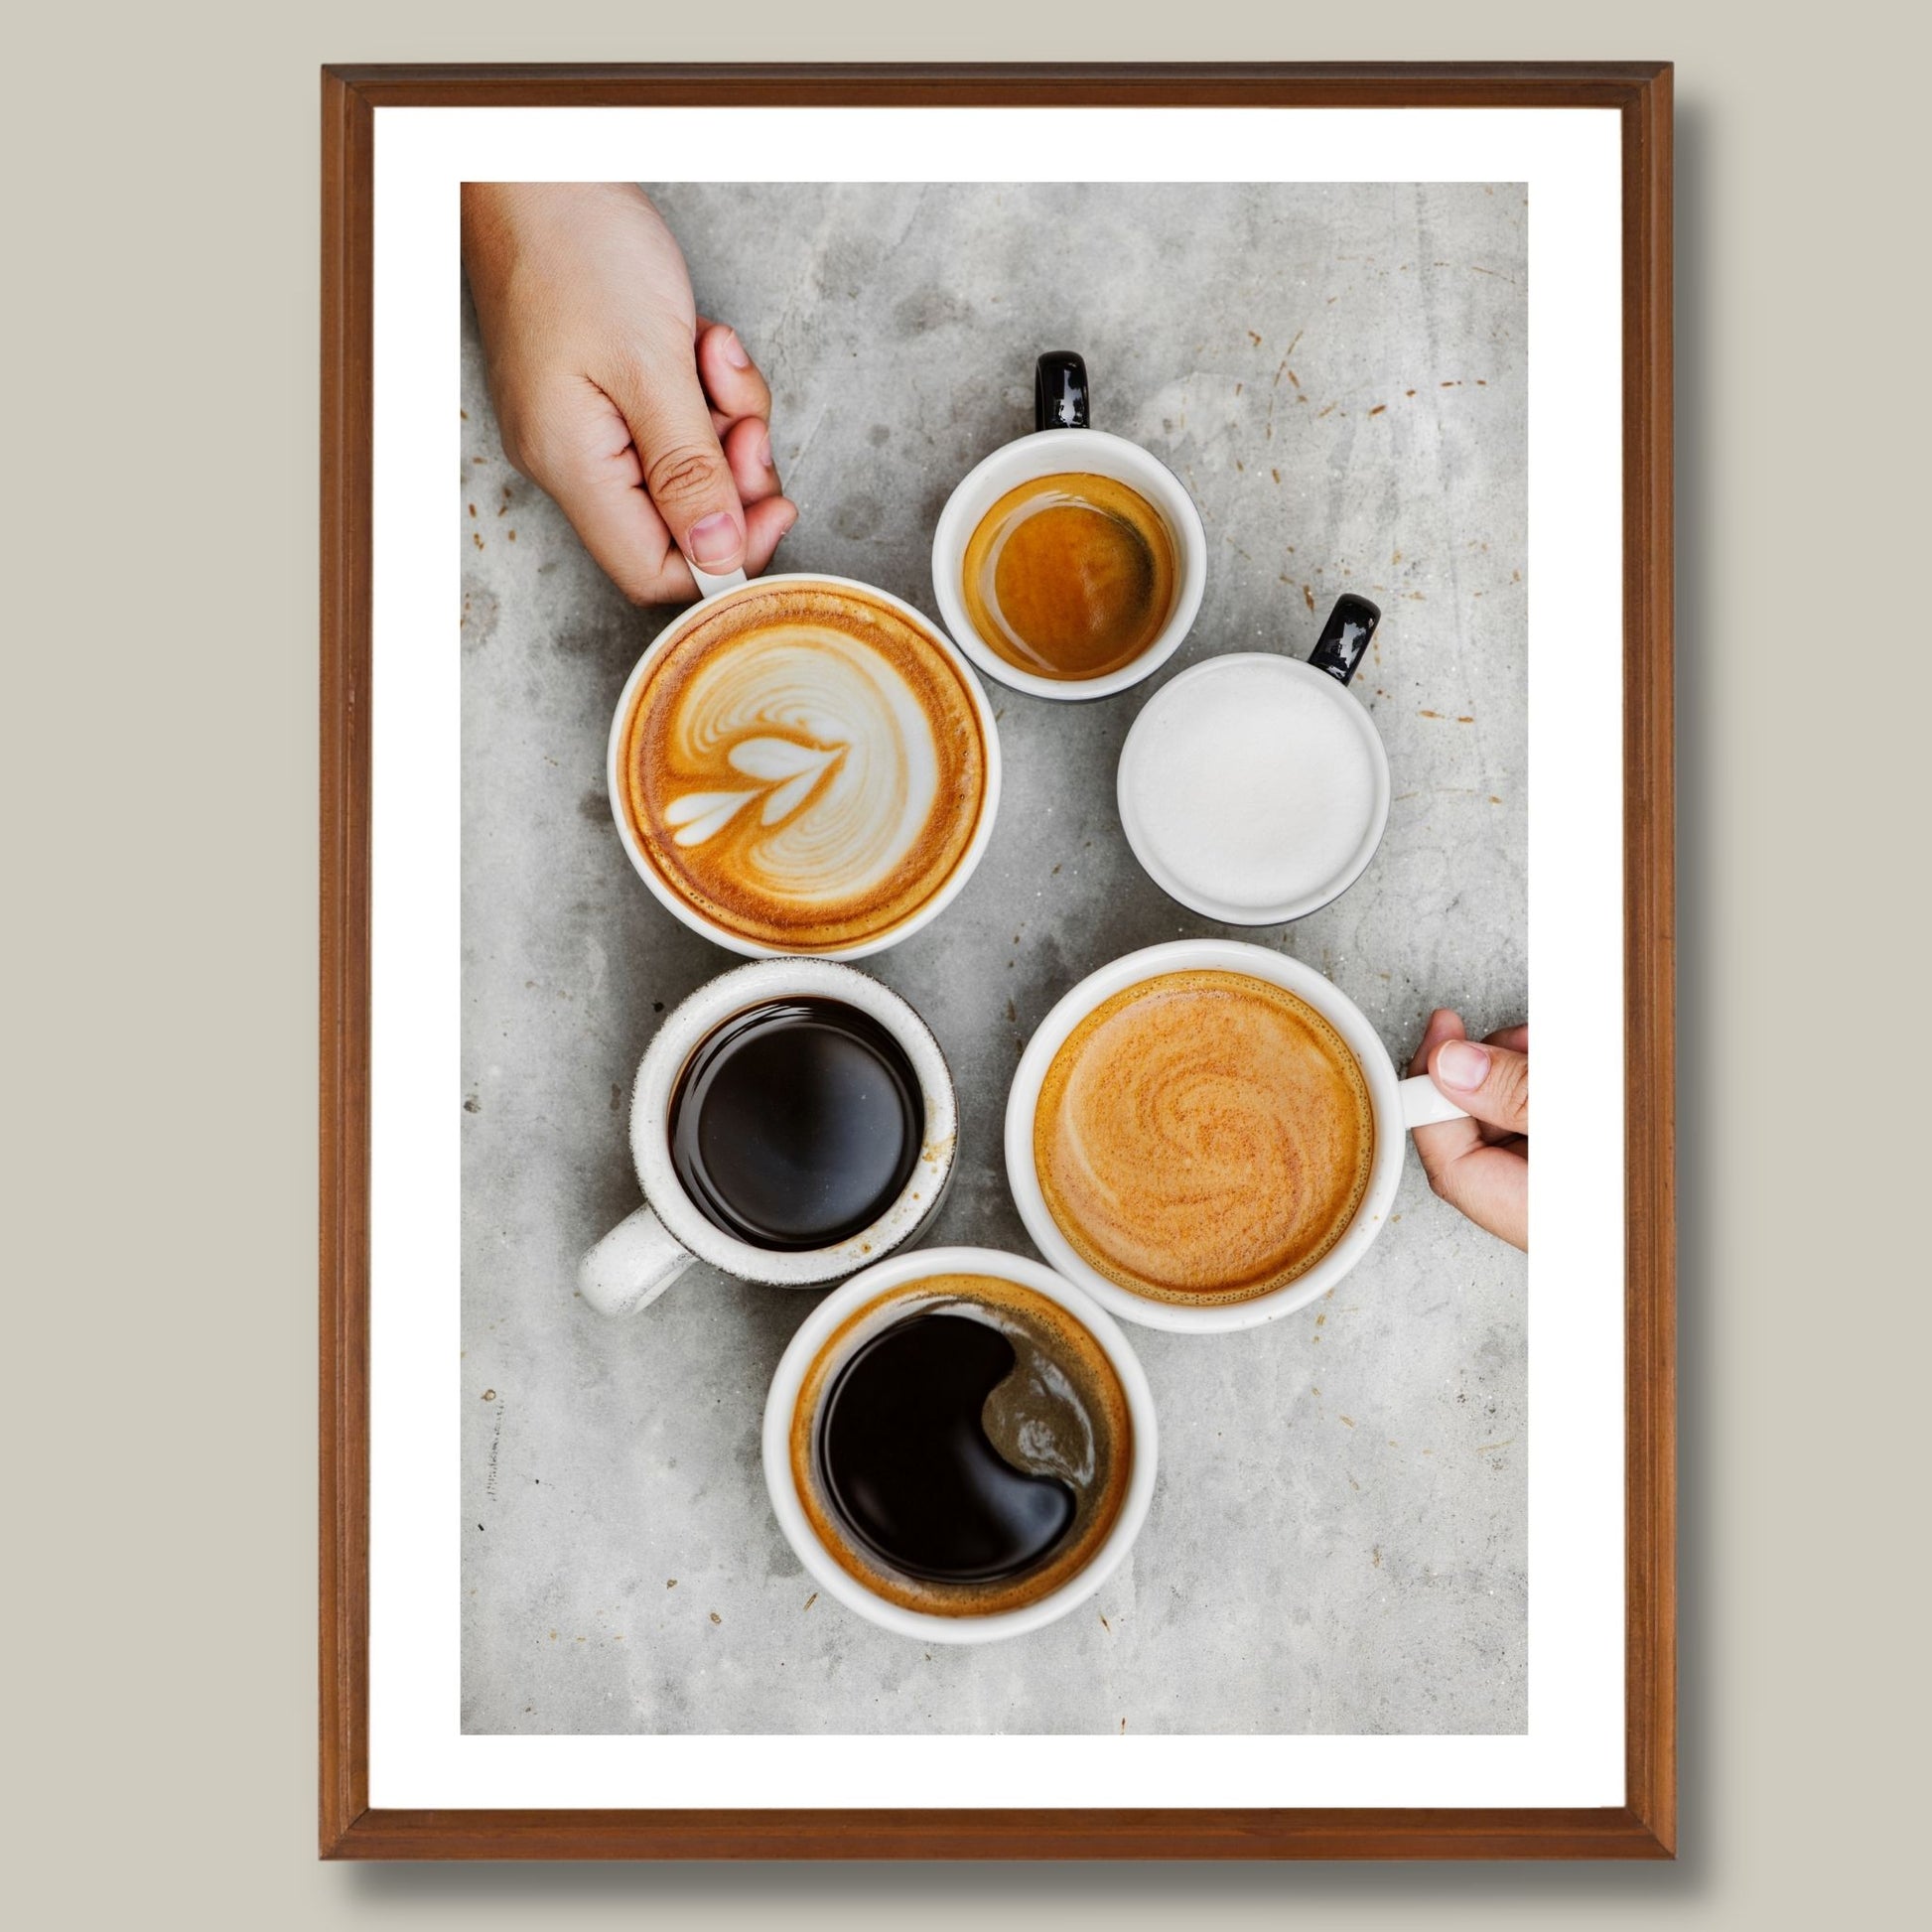 Dekorativ plakat av ulike sorter kaffe som vil passe perfekt på en kjøkkenvegg. Plakaten har en hvit kant som gir bildet mer dybde og fremhever motivet. Illustrasjonen viser plakaten i en eikeramme på en vegg.